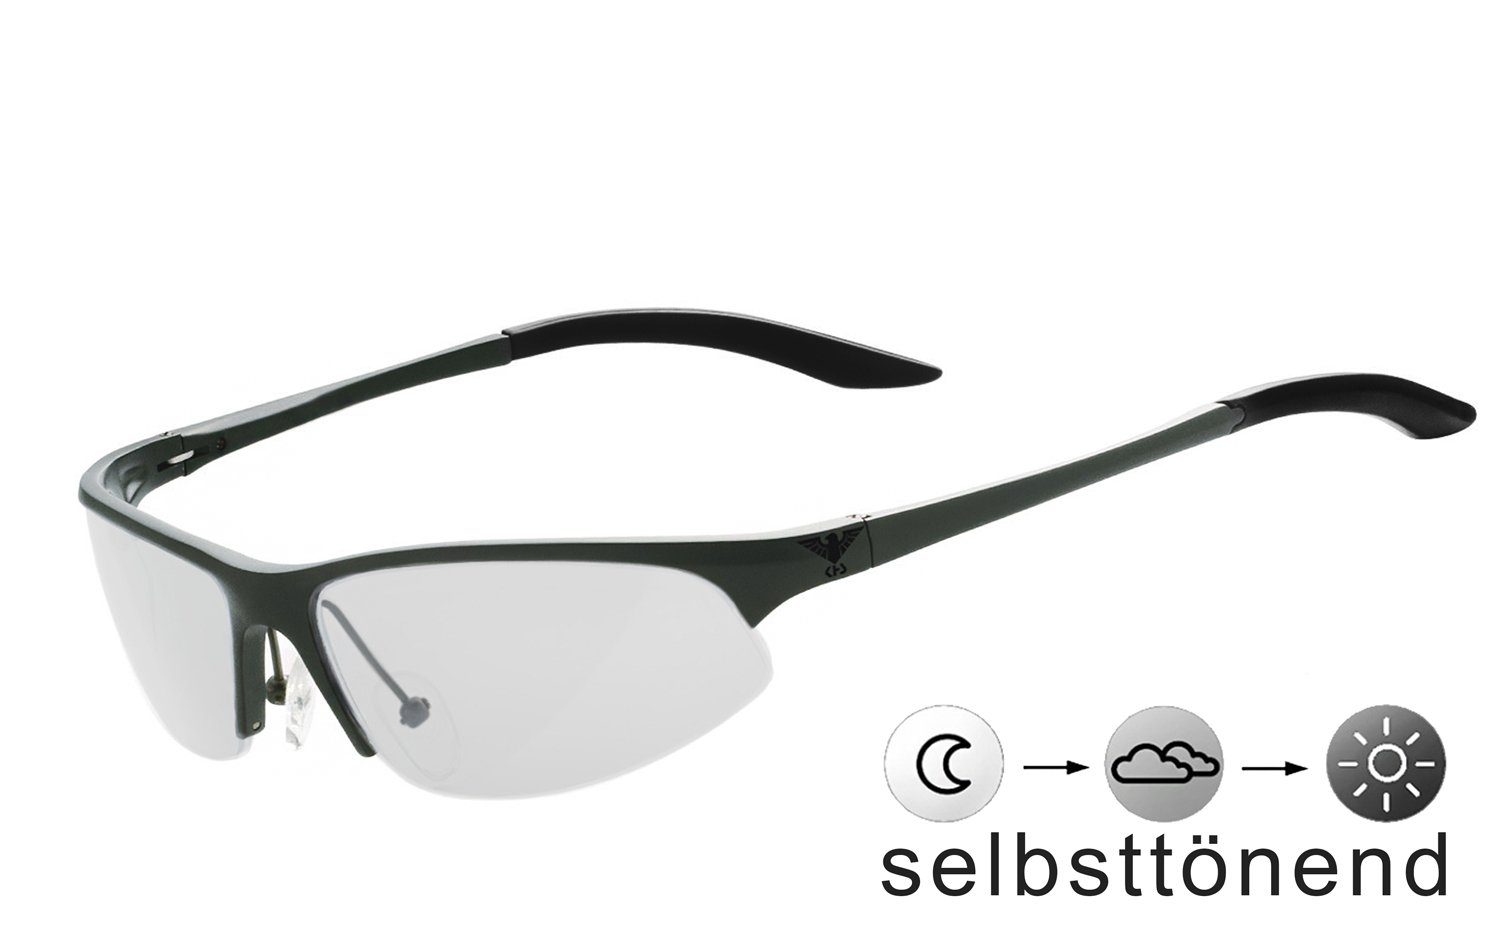 KHS Sportbrille KHS-140g Gläser selbsttönend, - selbsttönende schnell